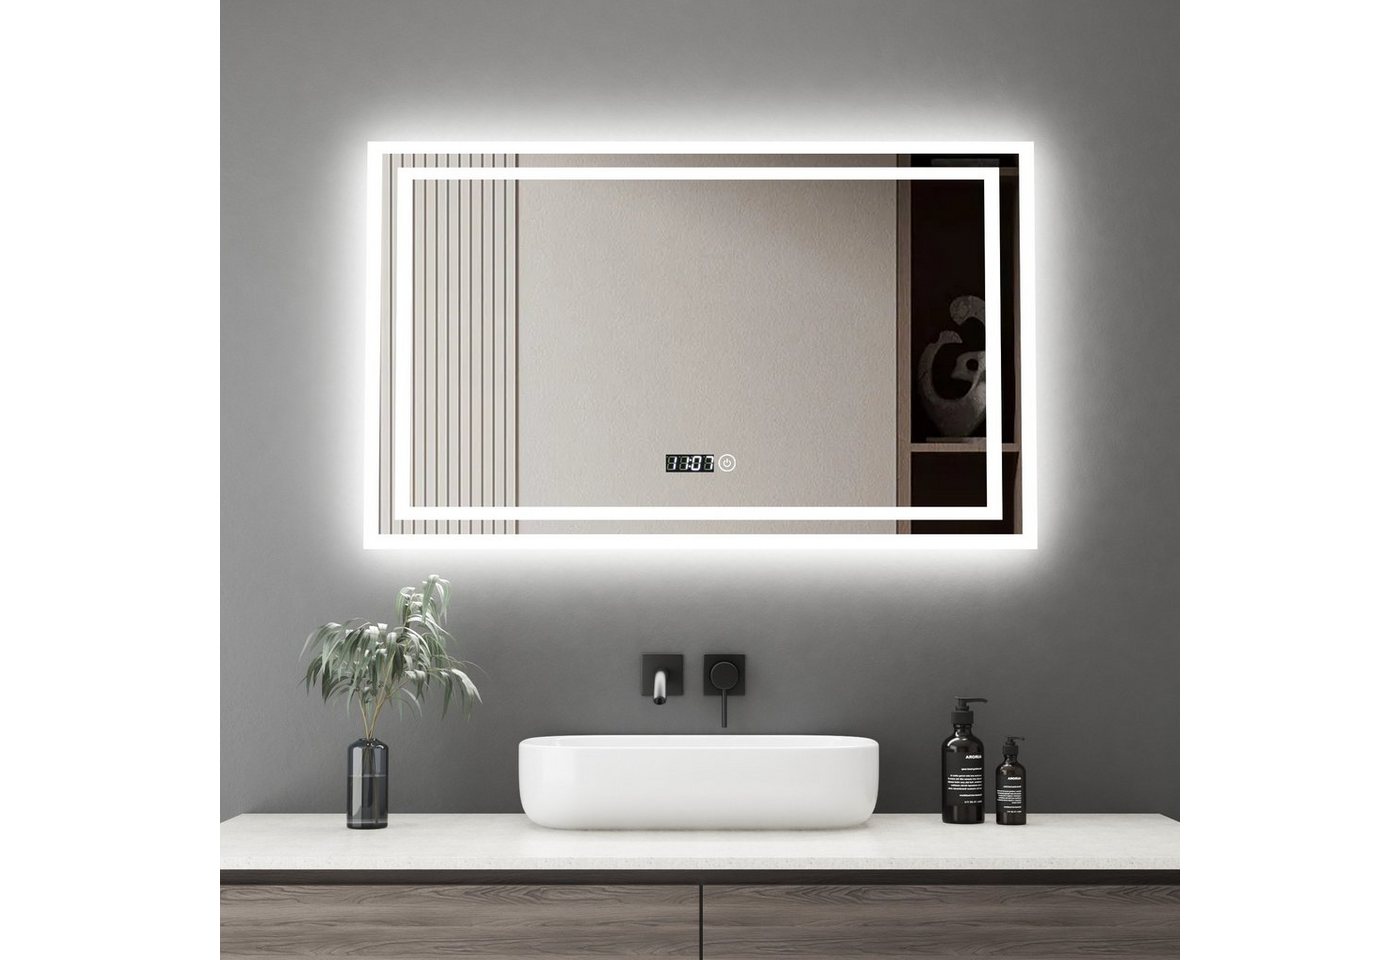 WDWRITTI LED-Lichtspiegel Badspiegel mit LED Beleuchtung 100x60cm (wasserdicht, staubdicht,Touch-Schalter mit Speicherfunktion,, Touch/Wandschalter, LED-Anzeige für 24-Stunden-Uhrzeit), 3 dimmbare Lichtfarben,Speicherfunktion,Digitaluhr von WDWRITTI